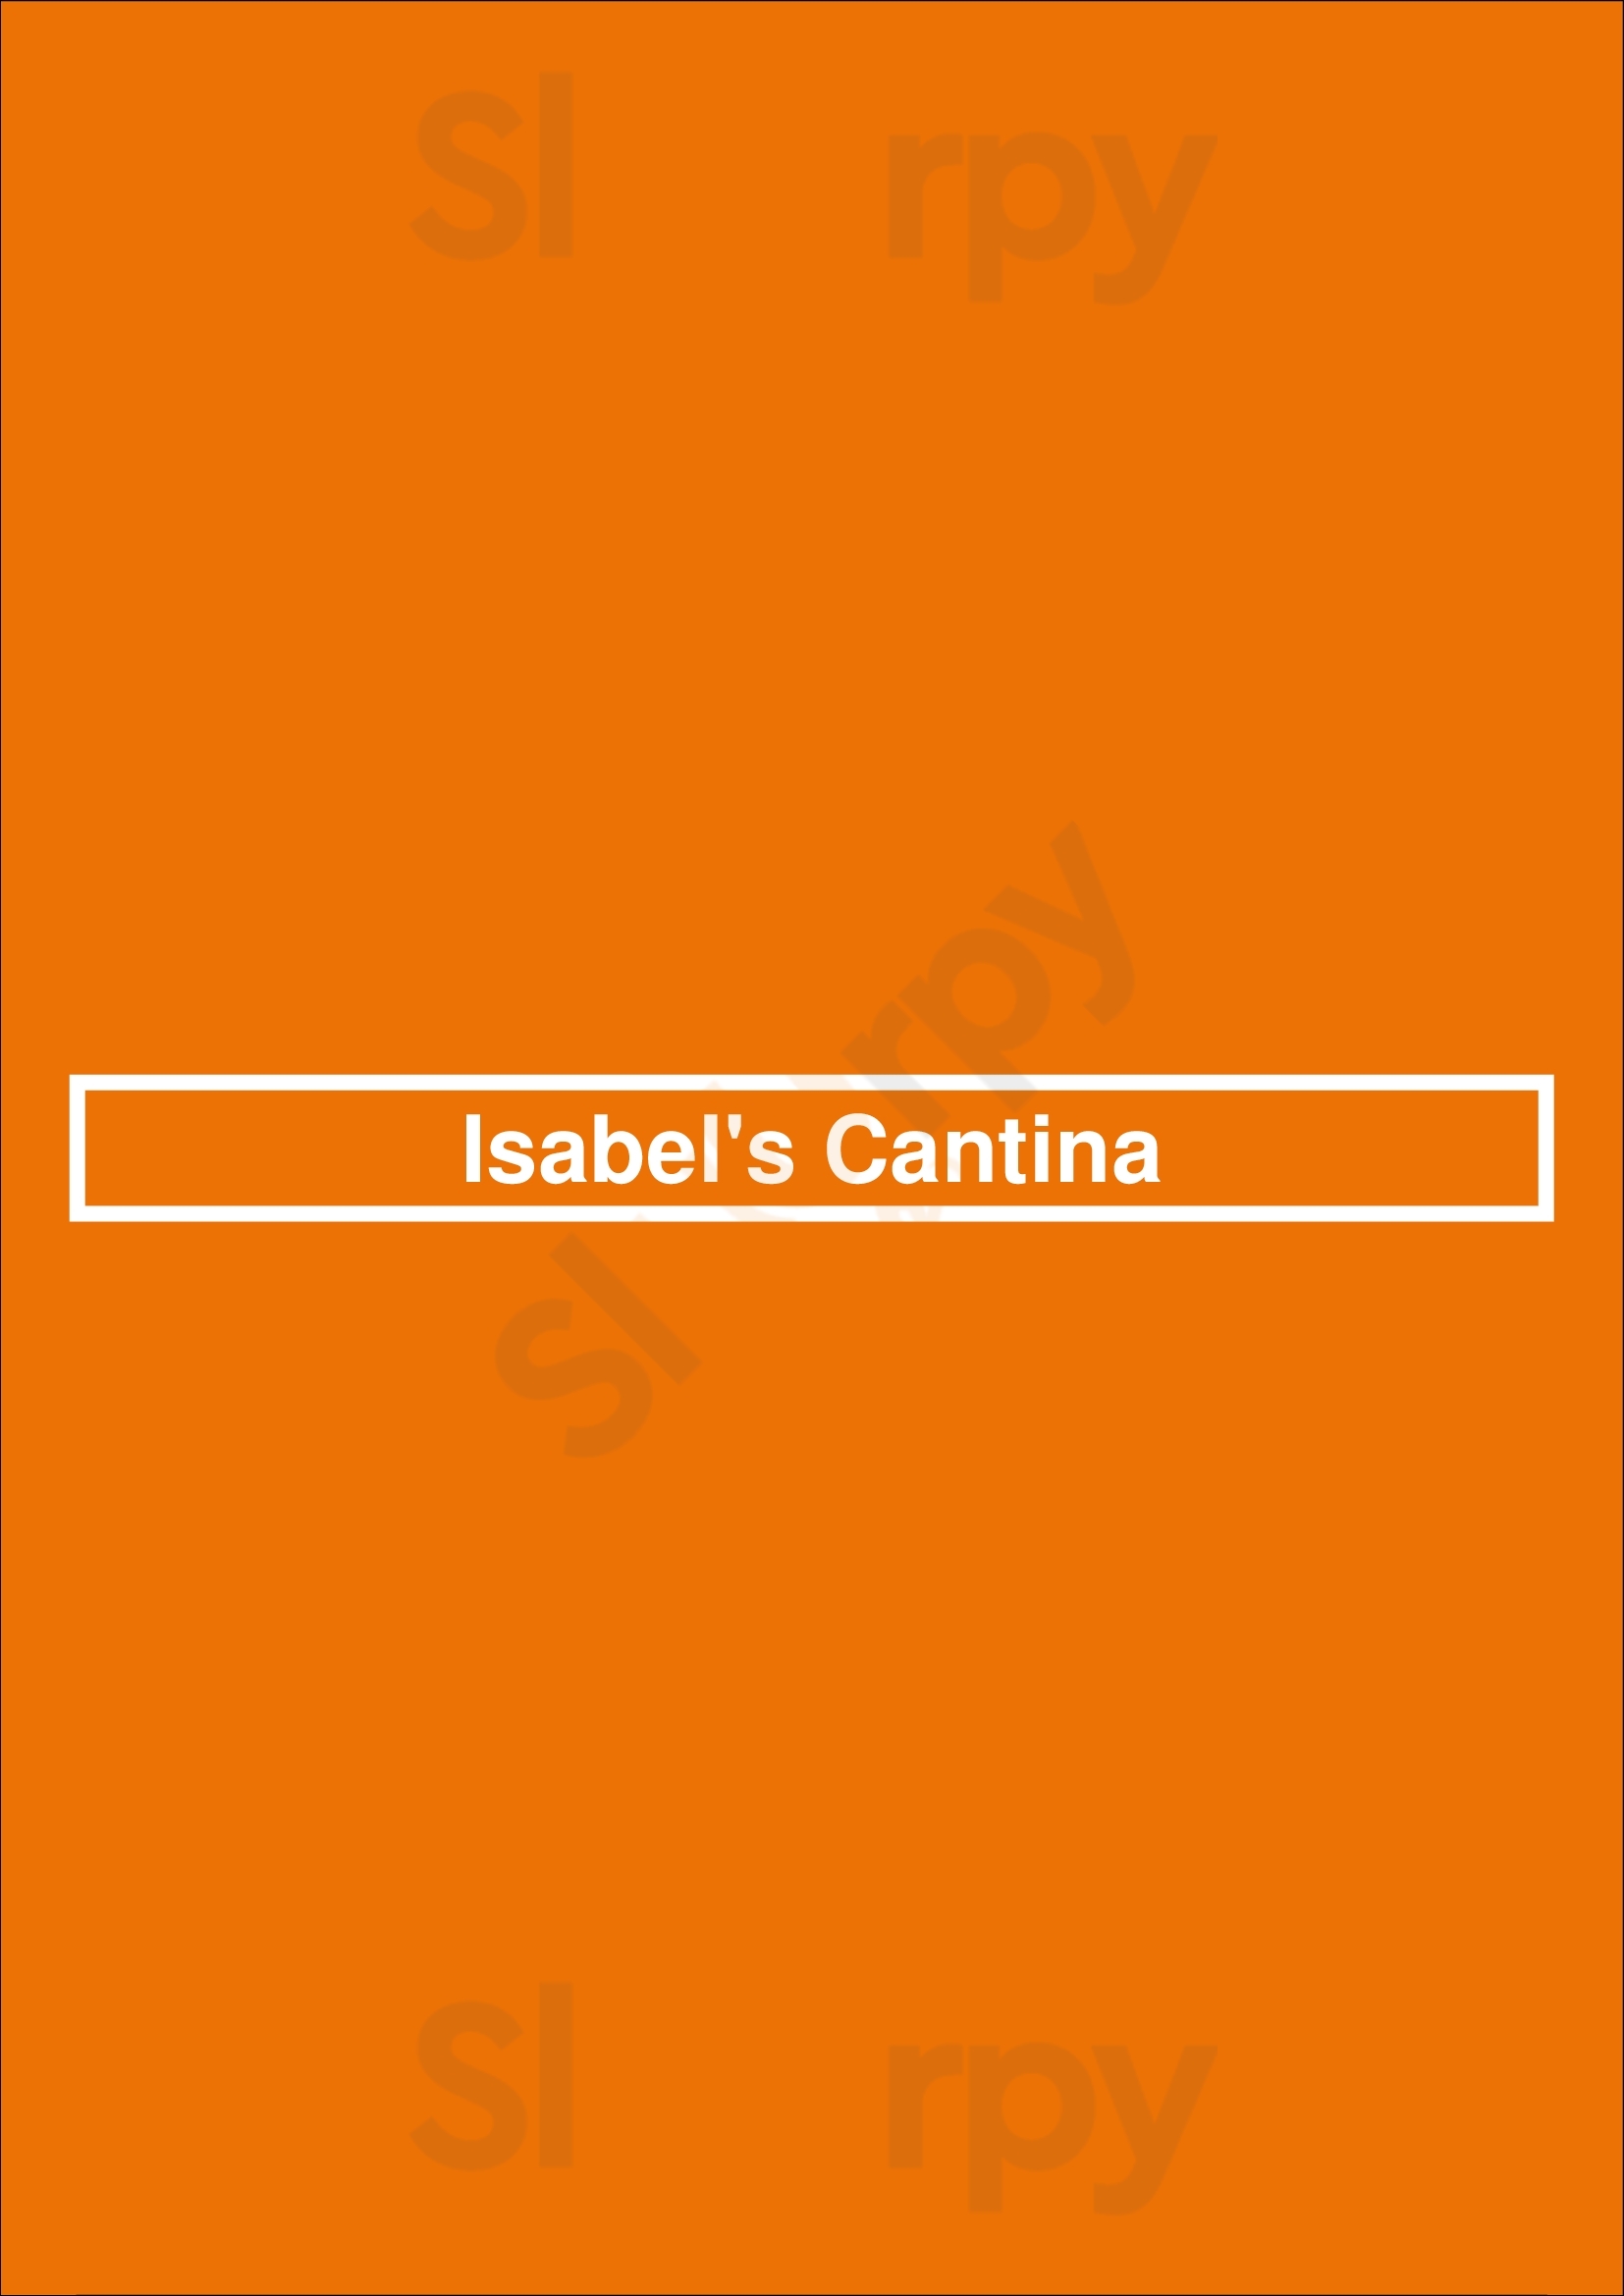 Isabel's Cantina San Diego Menu - 1